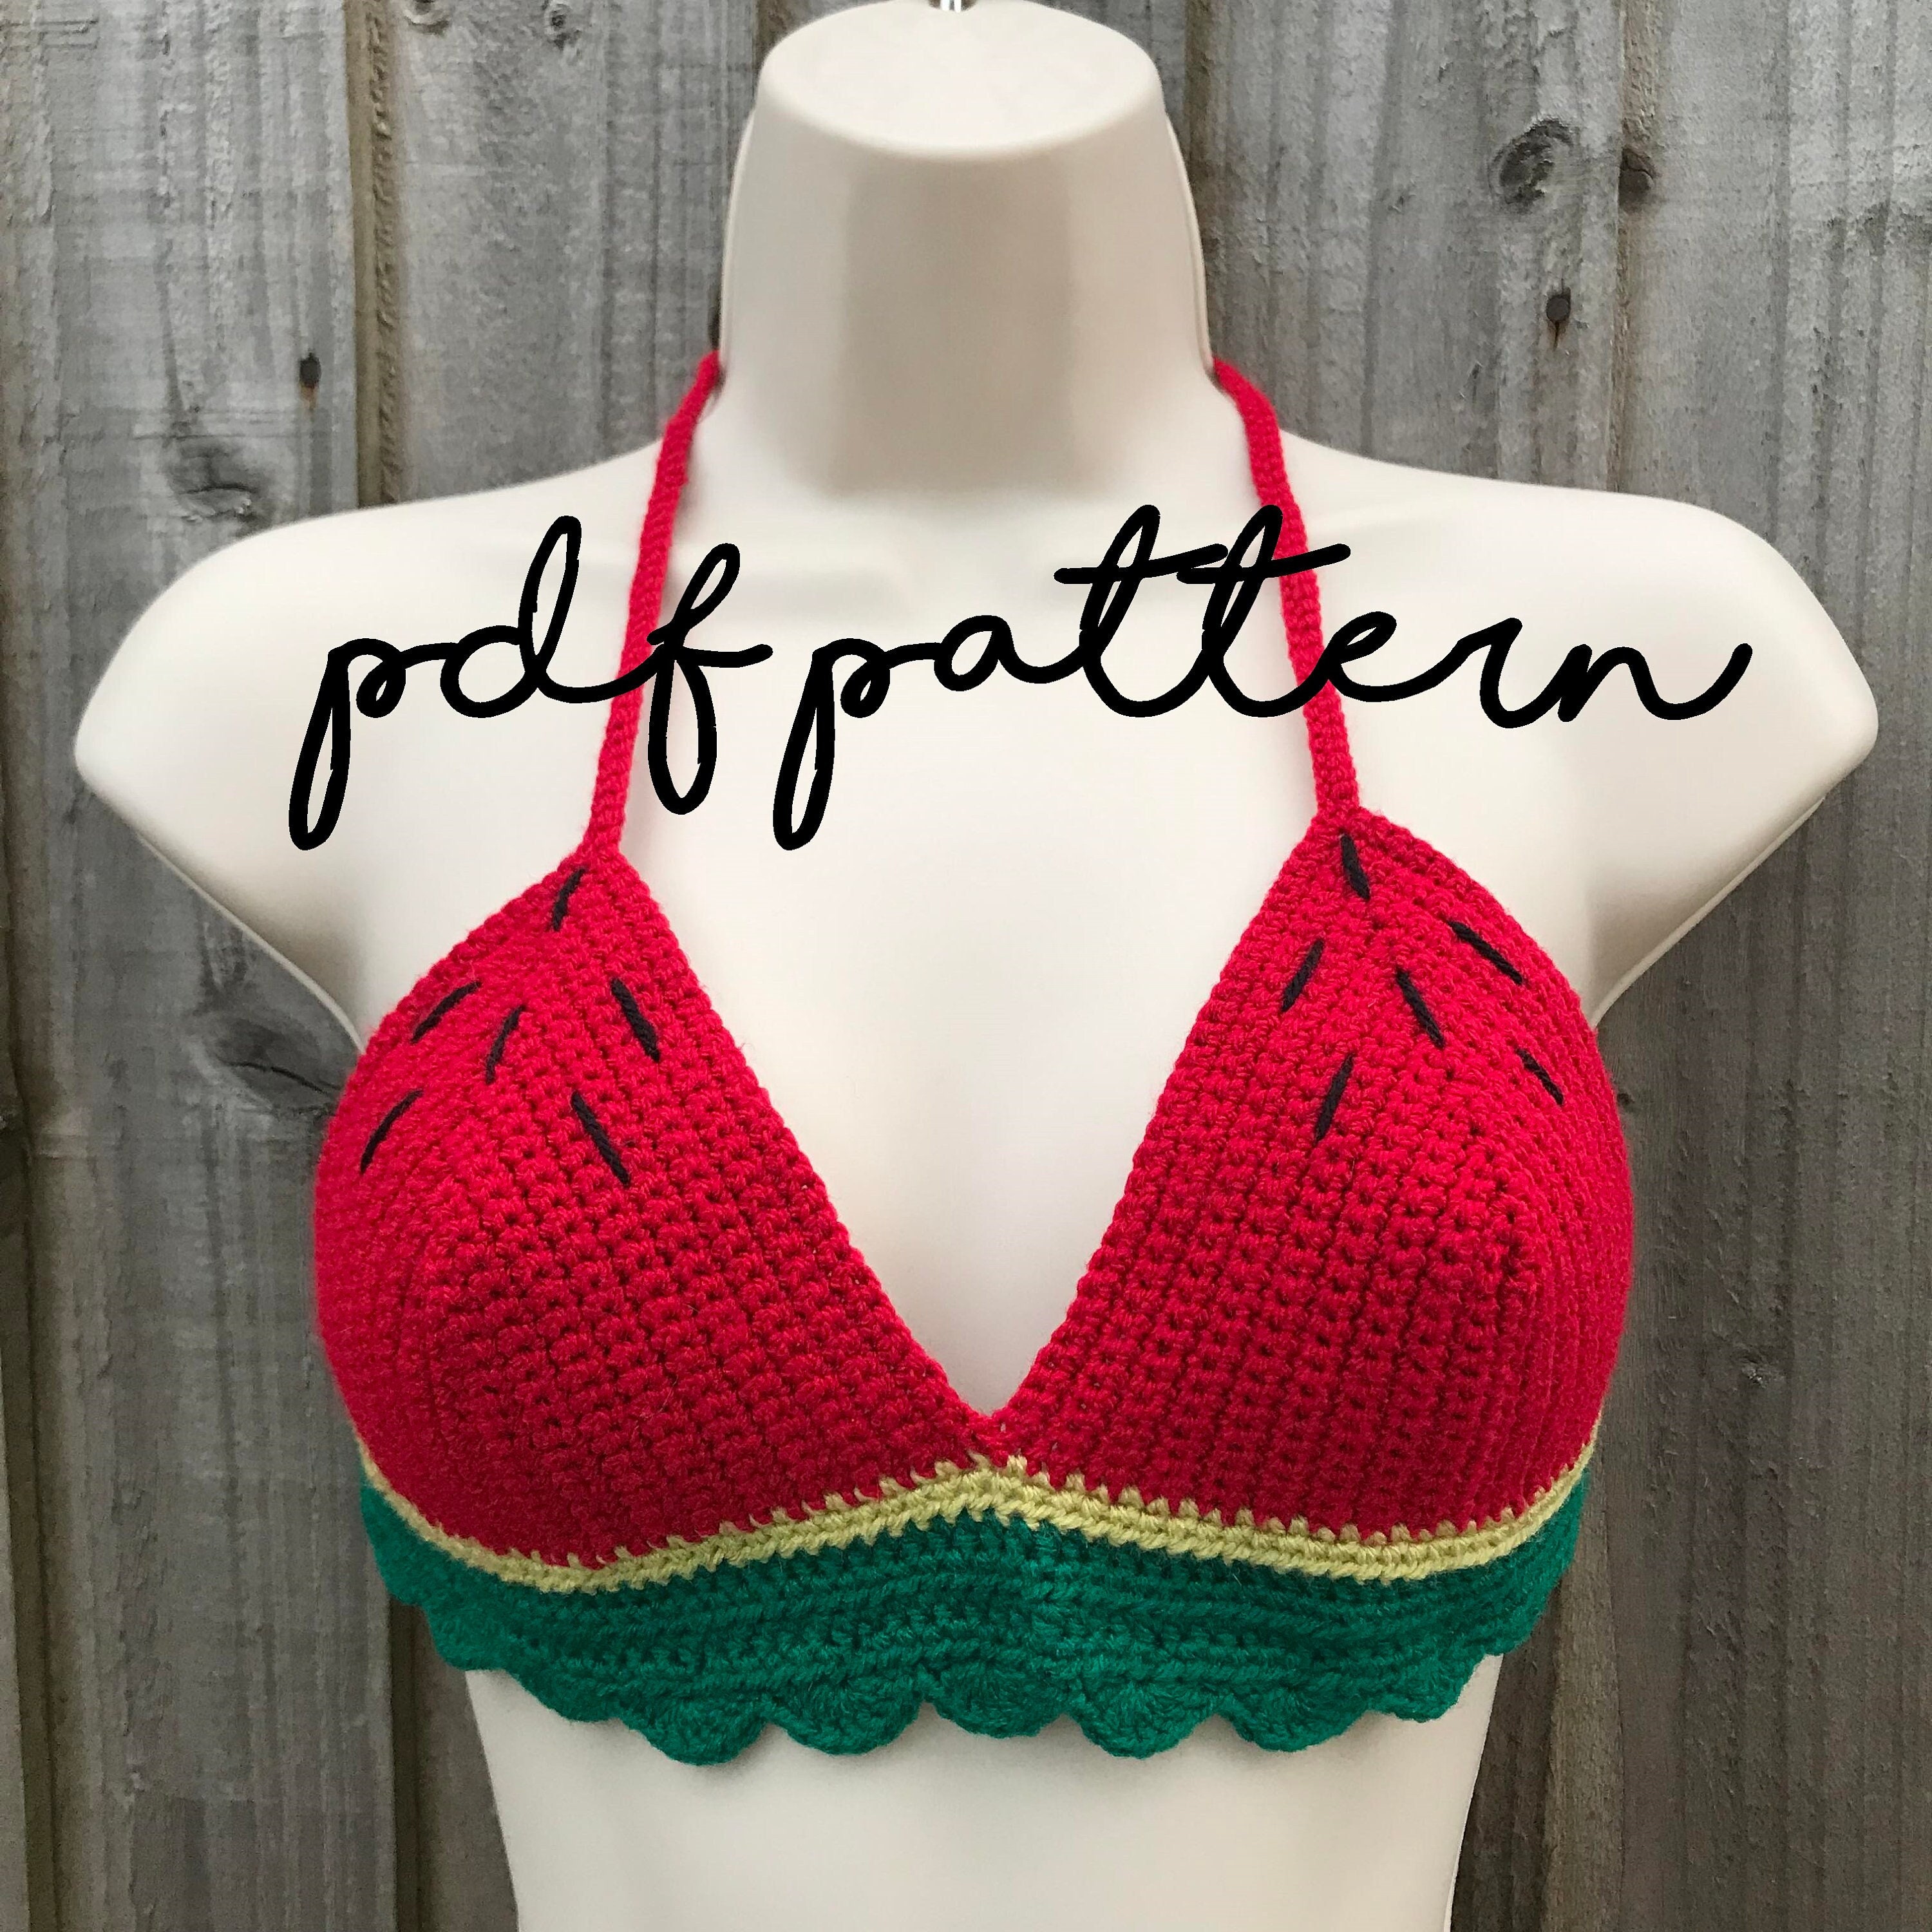 Crochet & Knitting Pattern. Vintage 1940s Ladies Brassieres/Bras/Underwear